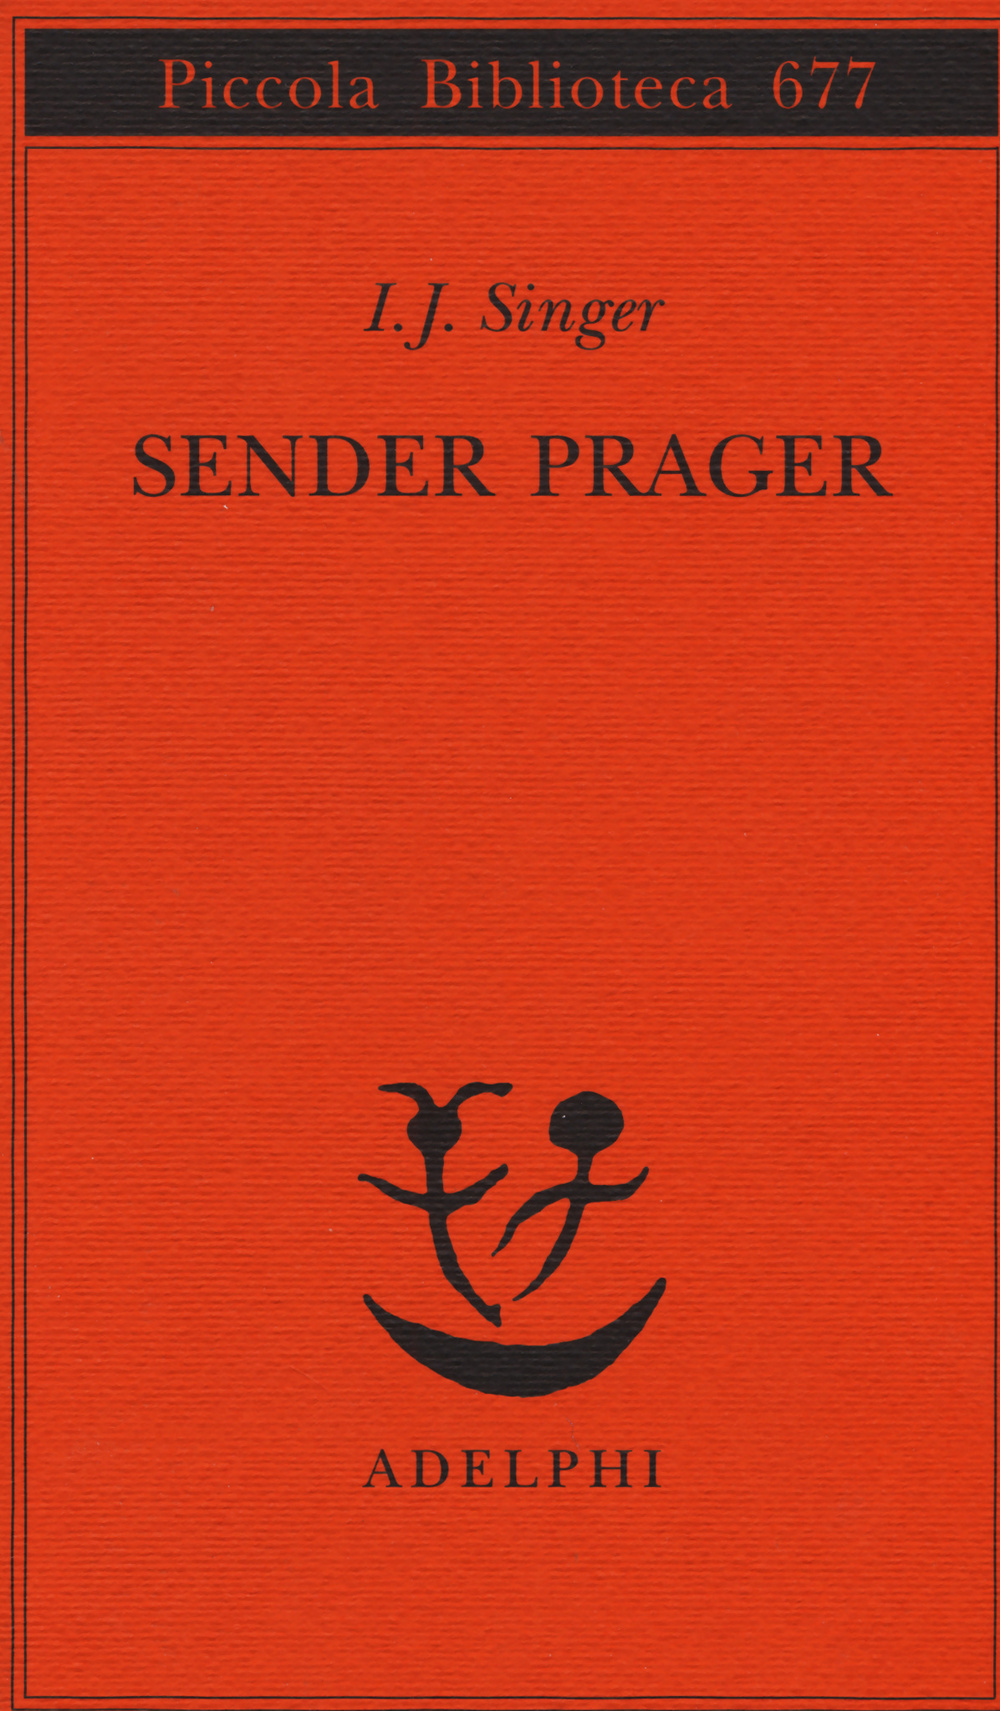 Sender Prager